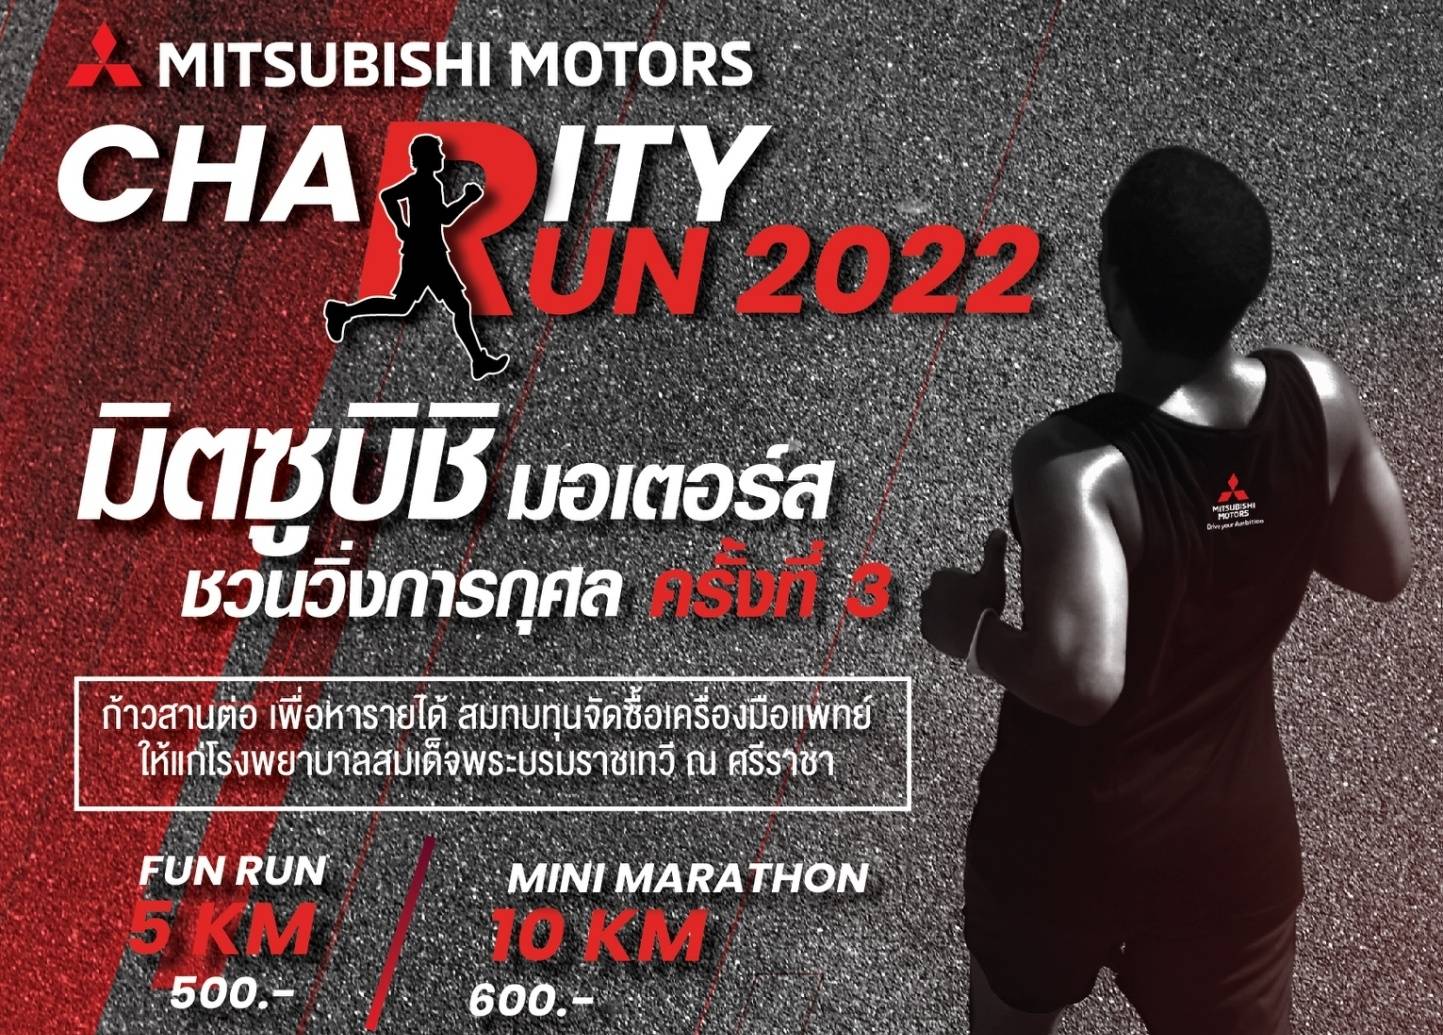 มิตซูบิชิ มอเตอร์ส ประเทศไทย ชวนนักวิ่งทุกท่าน เข้าร่วมงานวิ่งการกุศล